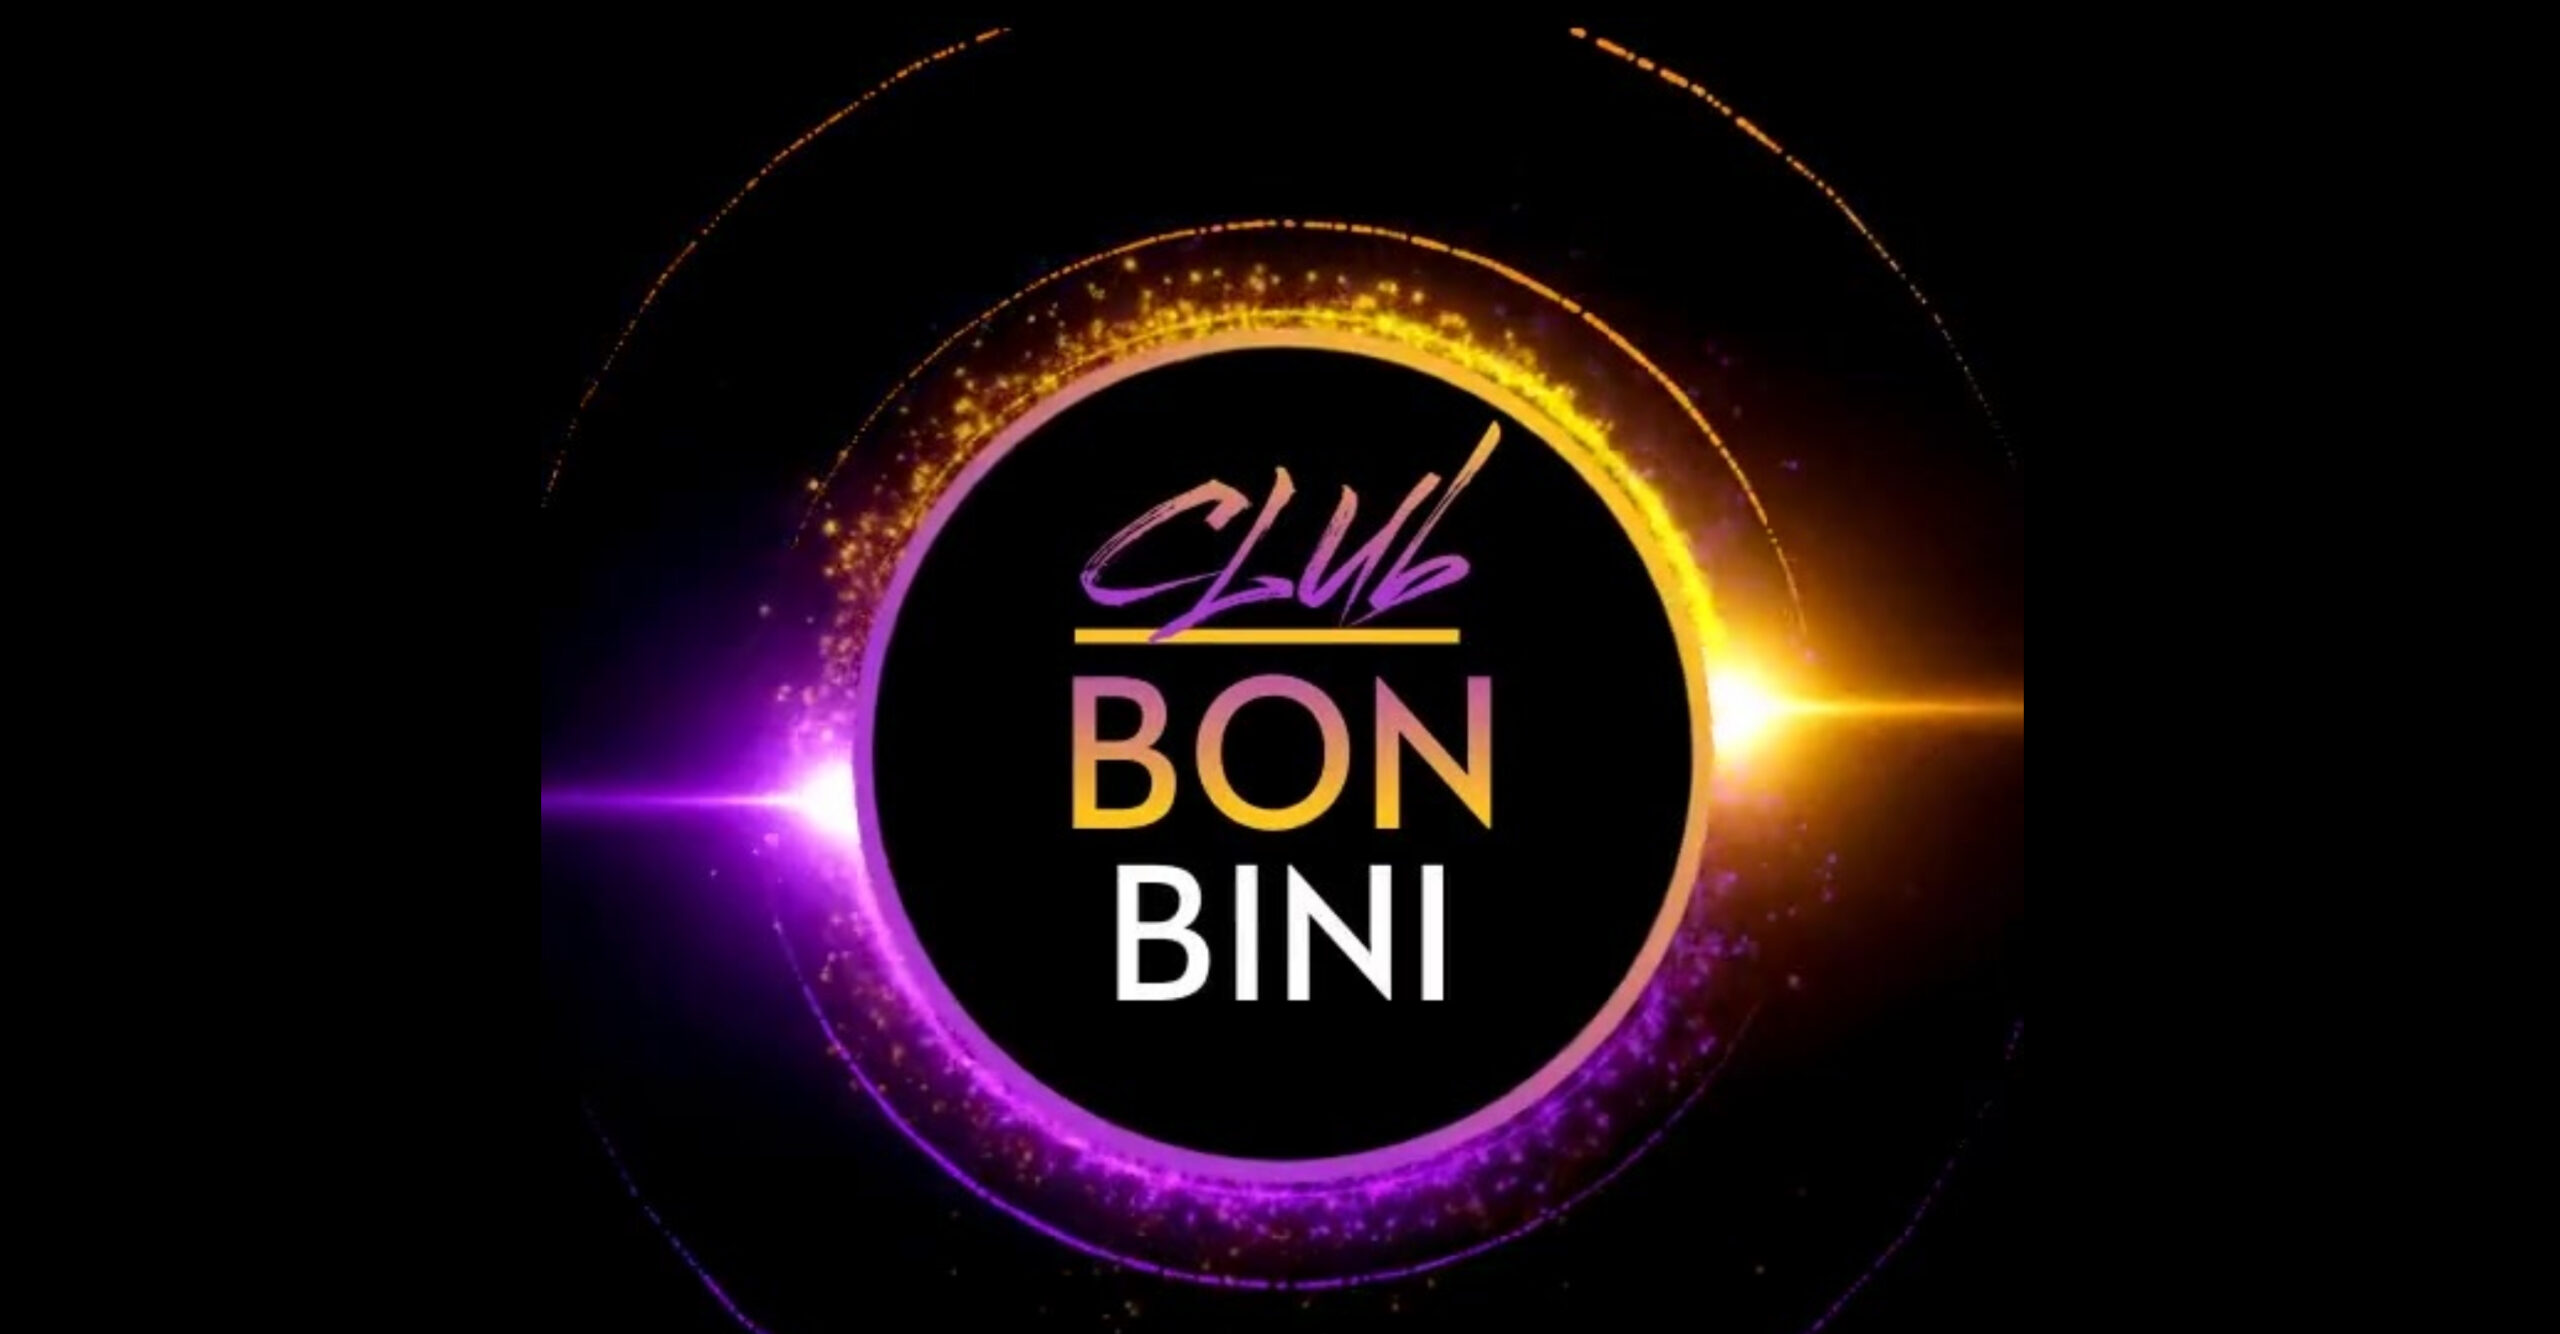 Club Bon Bini